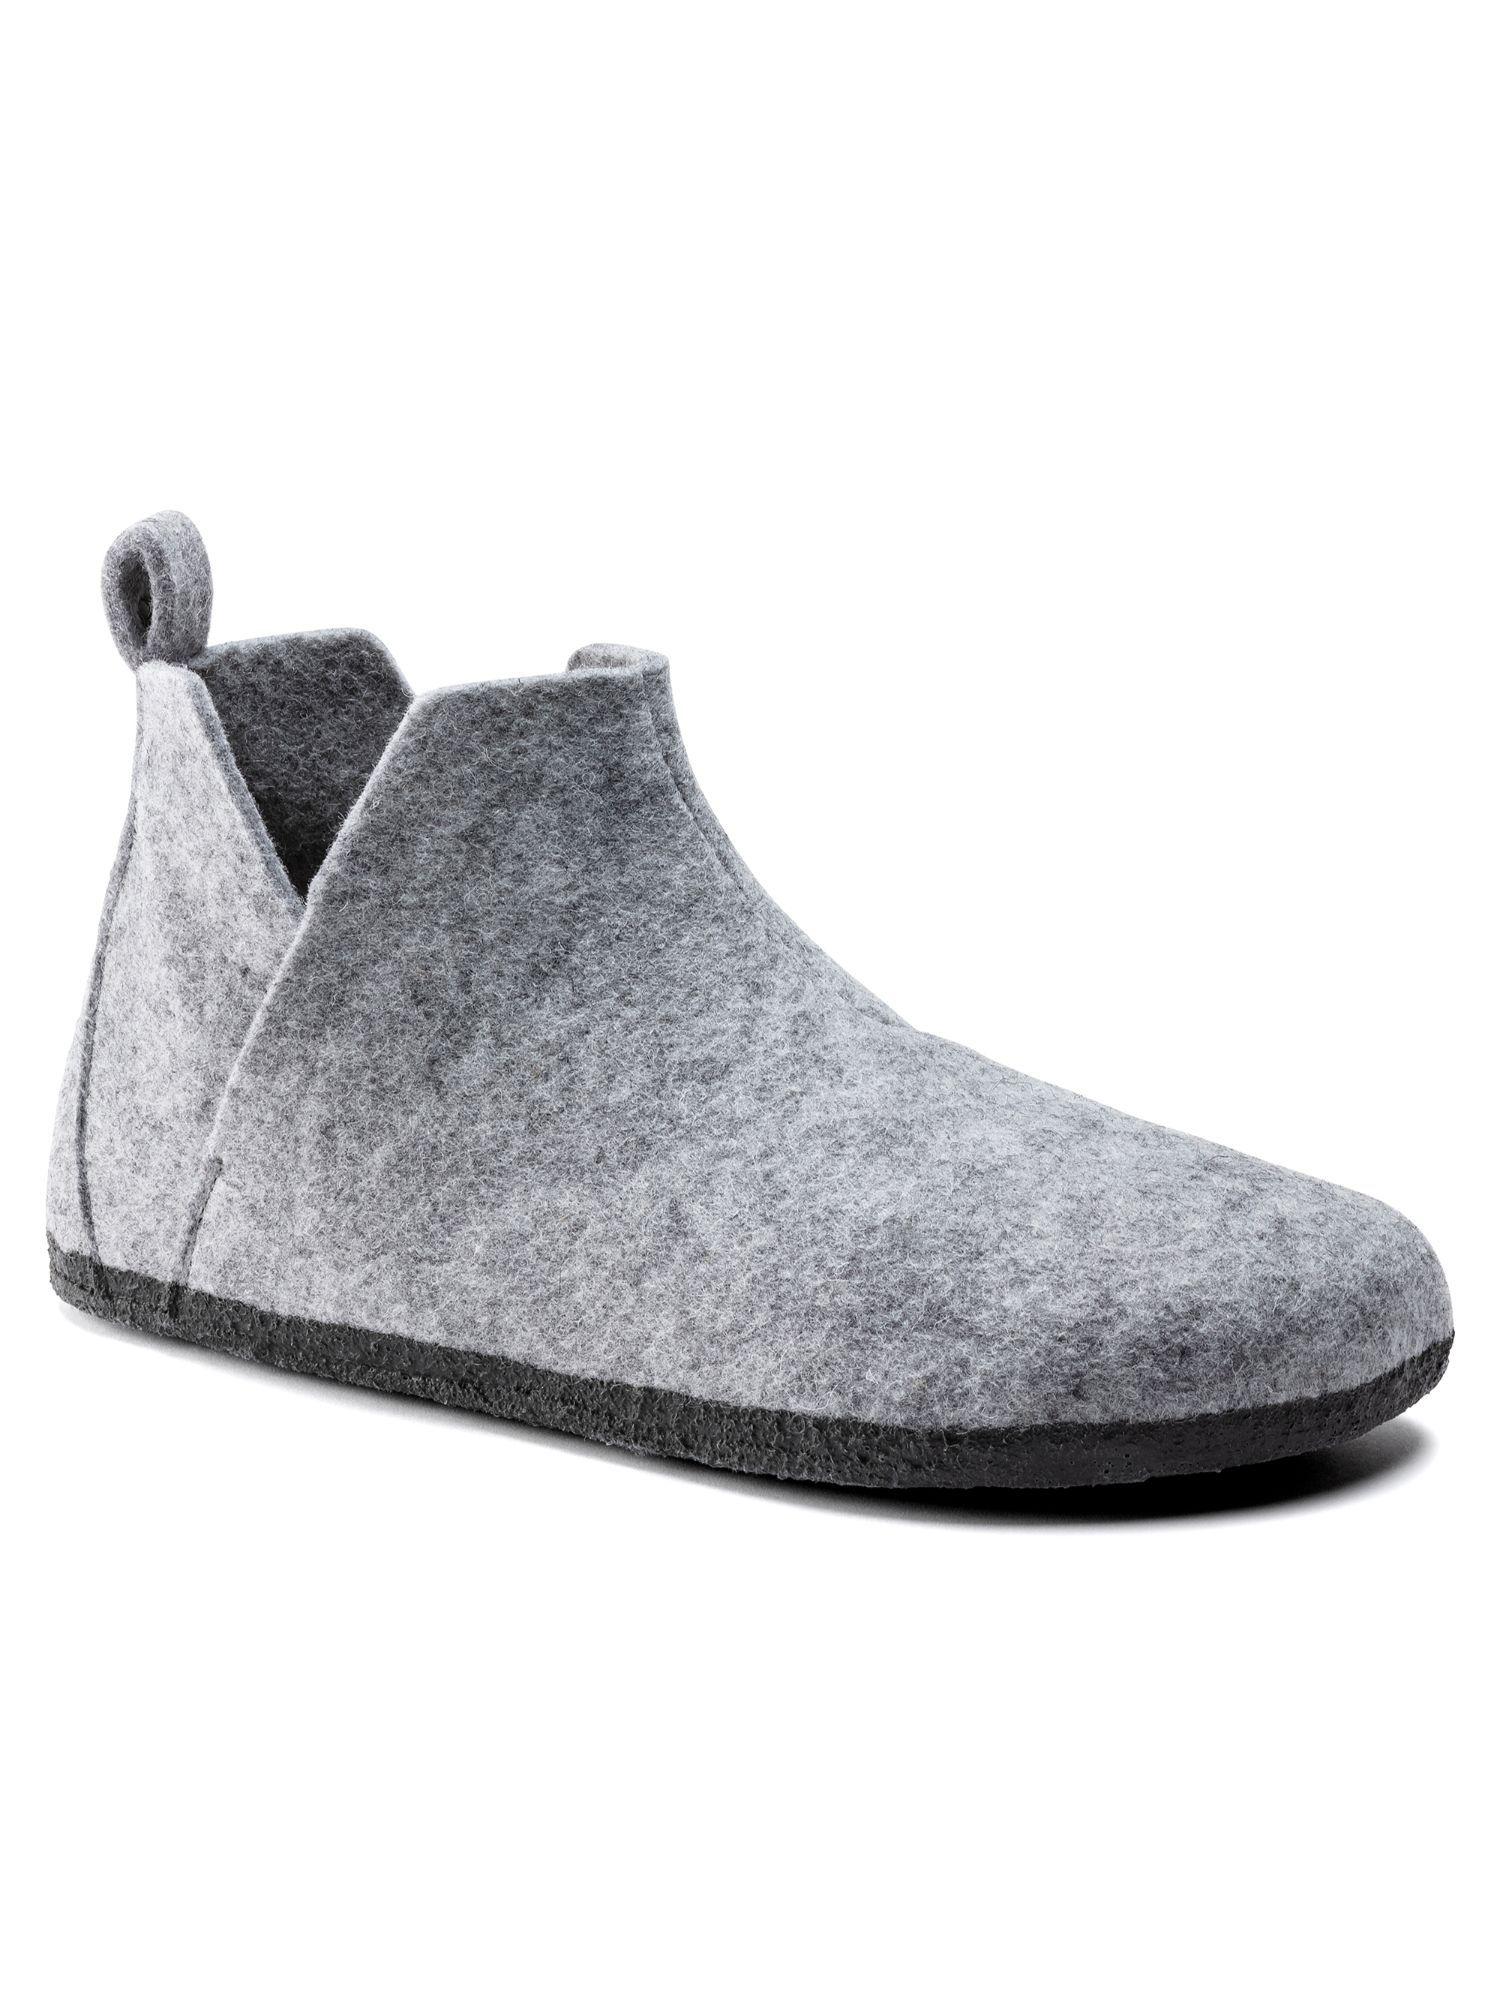 andermatt wool felt gray flat boots